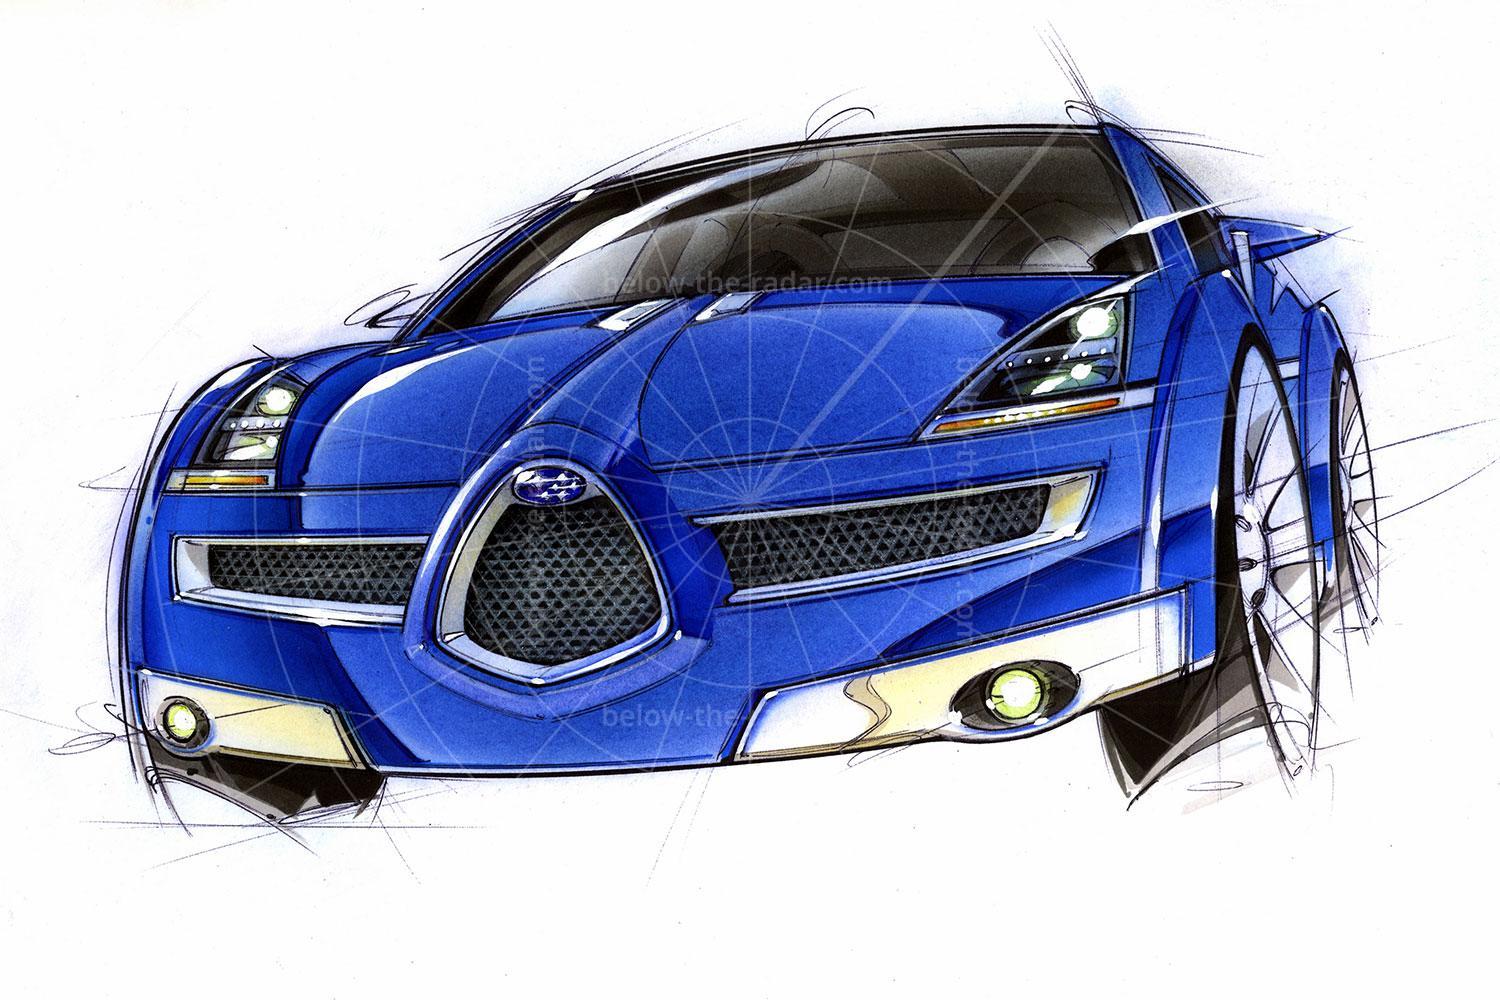 Subaru B11S design sketch